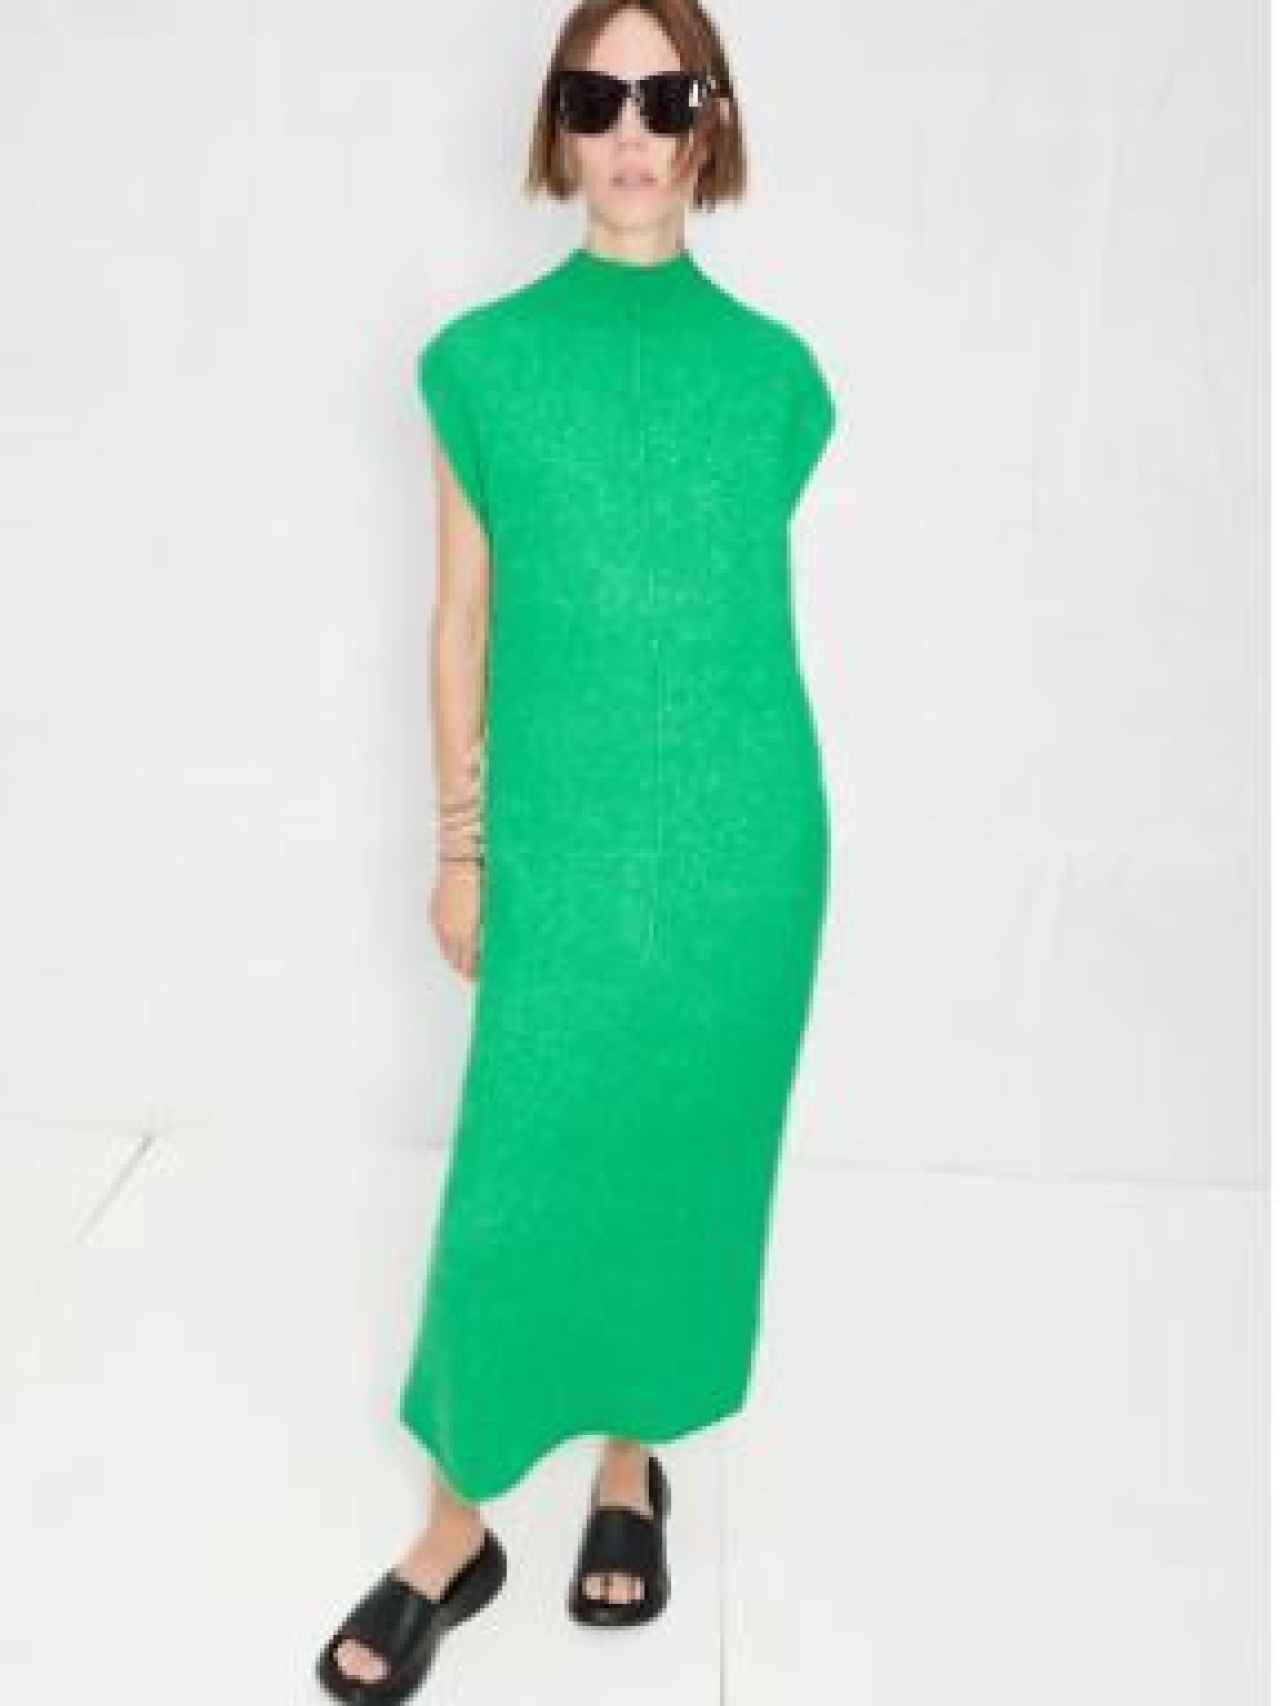 Vestido de Zara verde esmeralda, 49,95 euros.